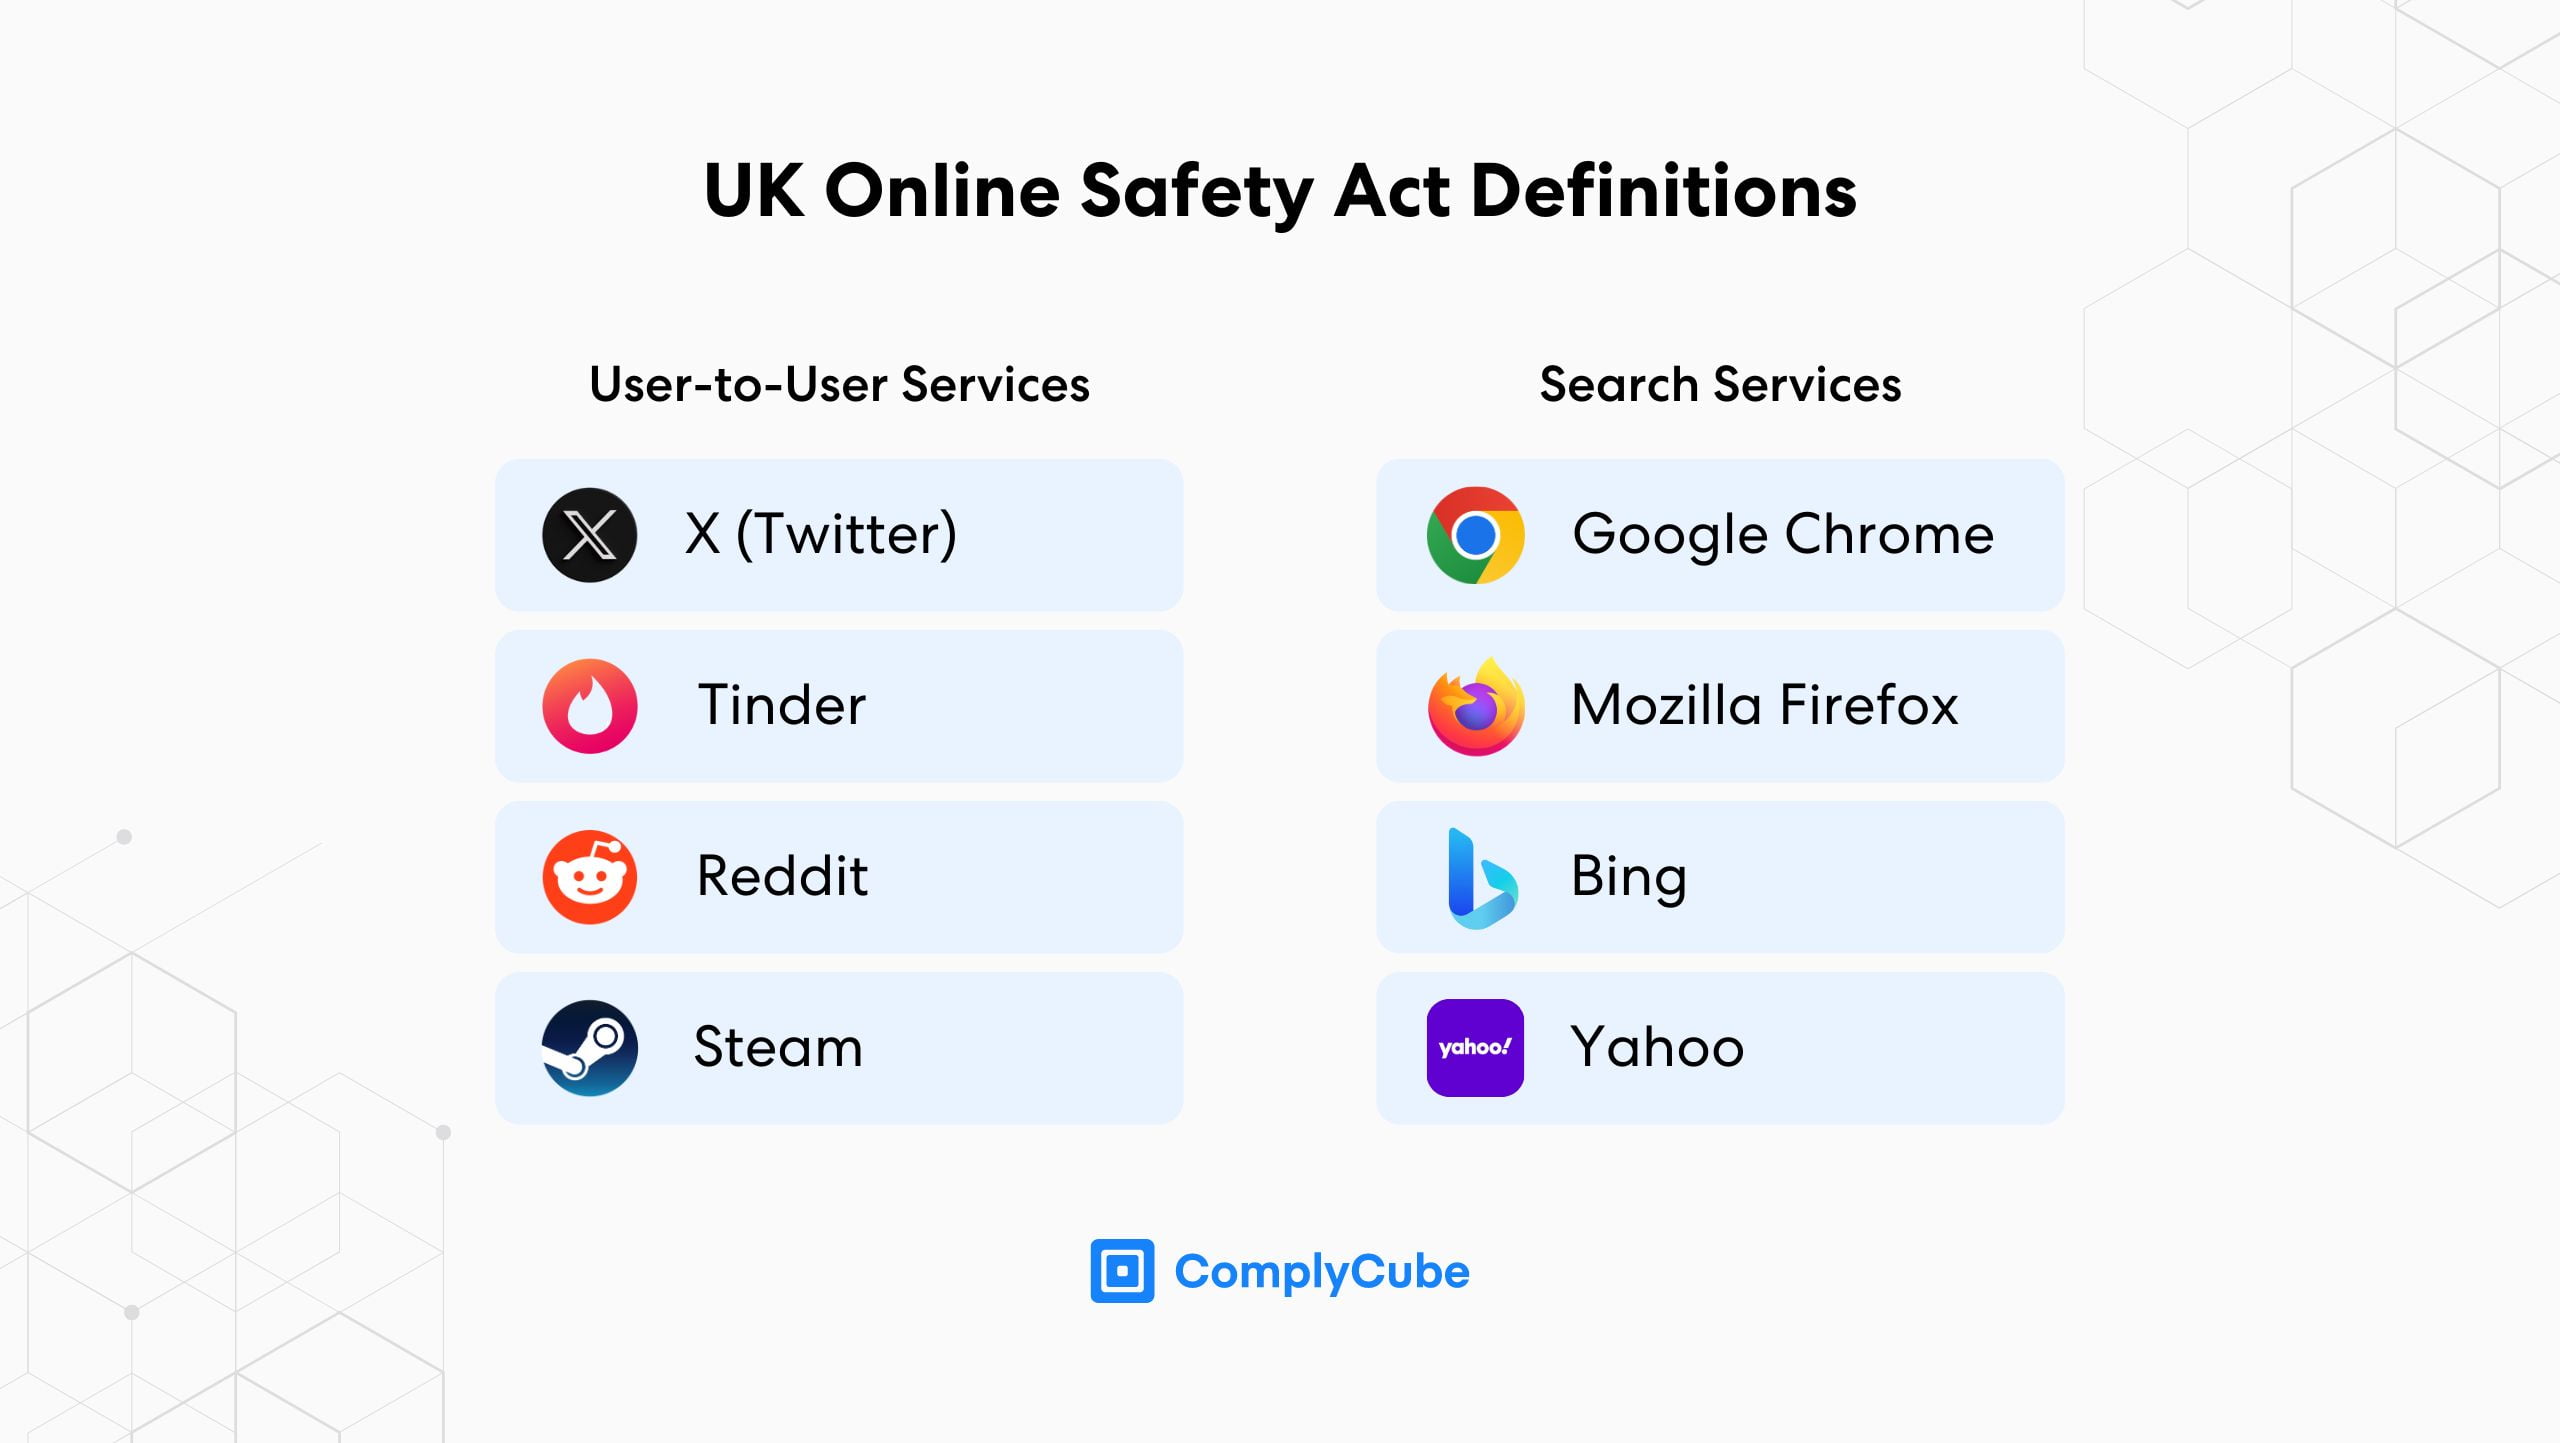 Servizi regolamentati dalla legge sulla sicurezza online del Regno Unito che dovranno introdurre un sistema di verifica dell'età e dell'identità.